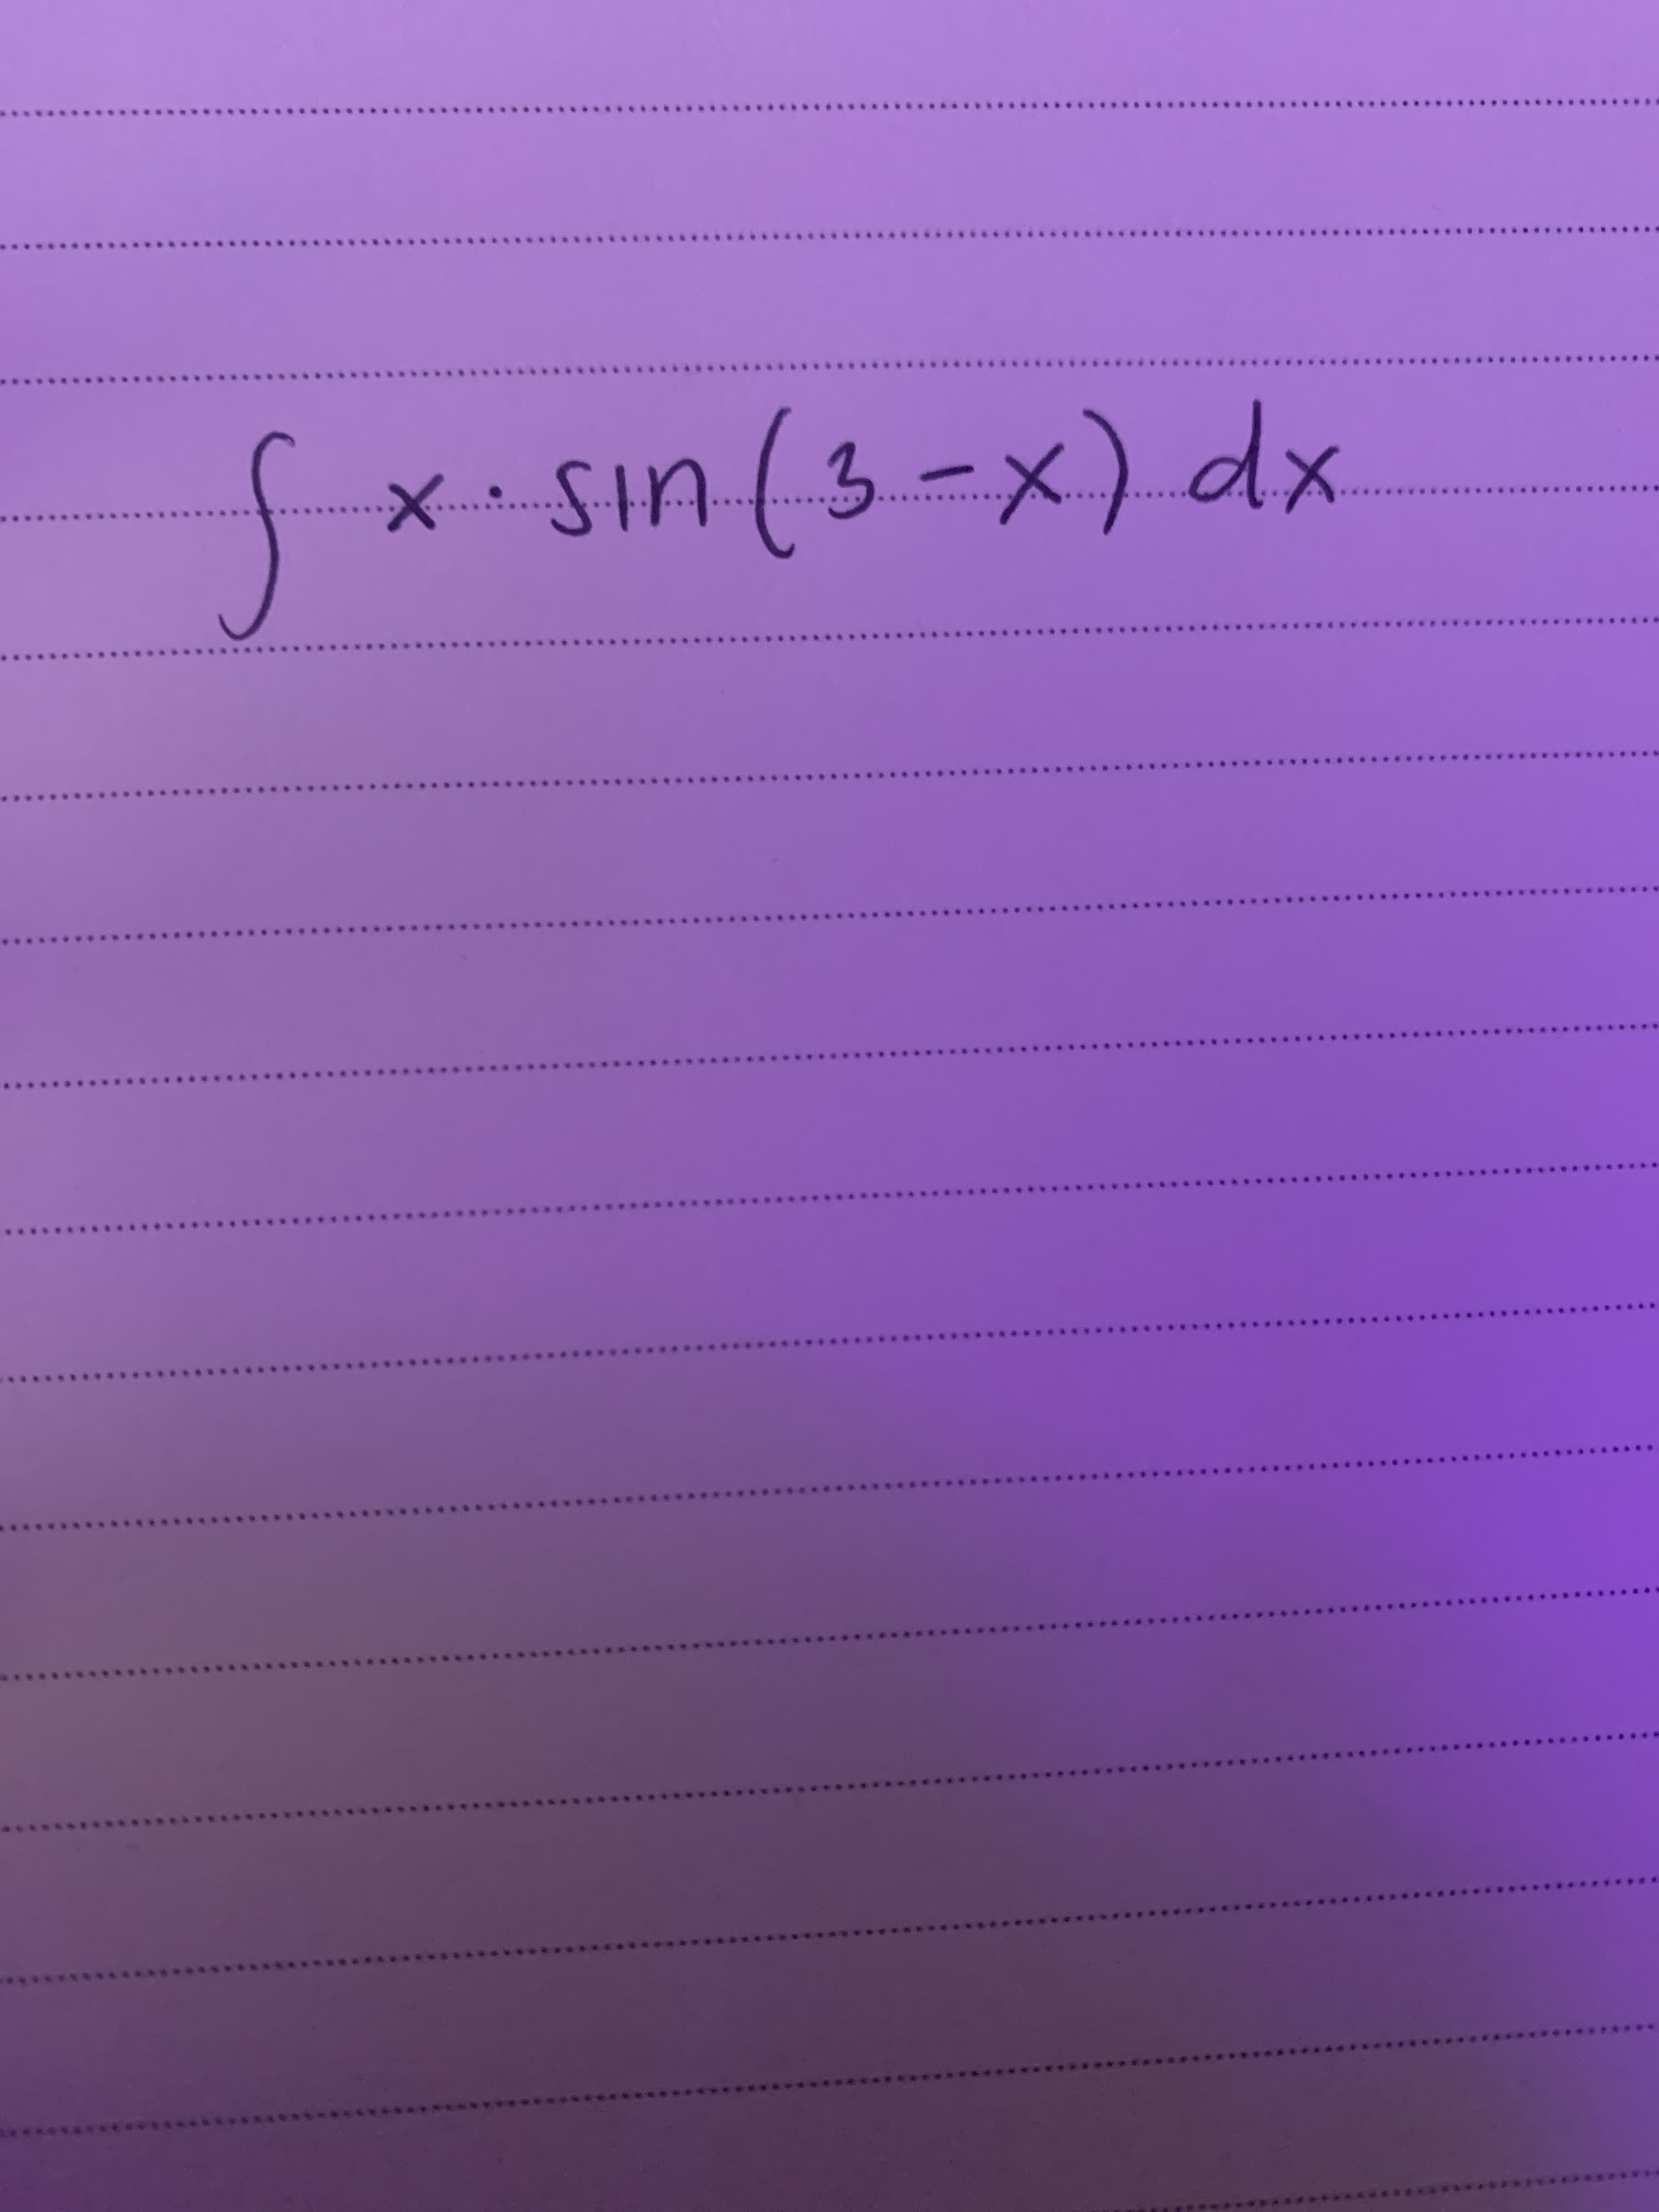 fx-
sın (3-x) dx
Sin.
